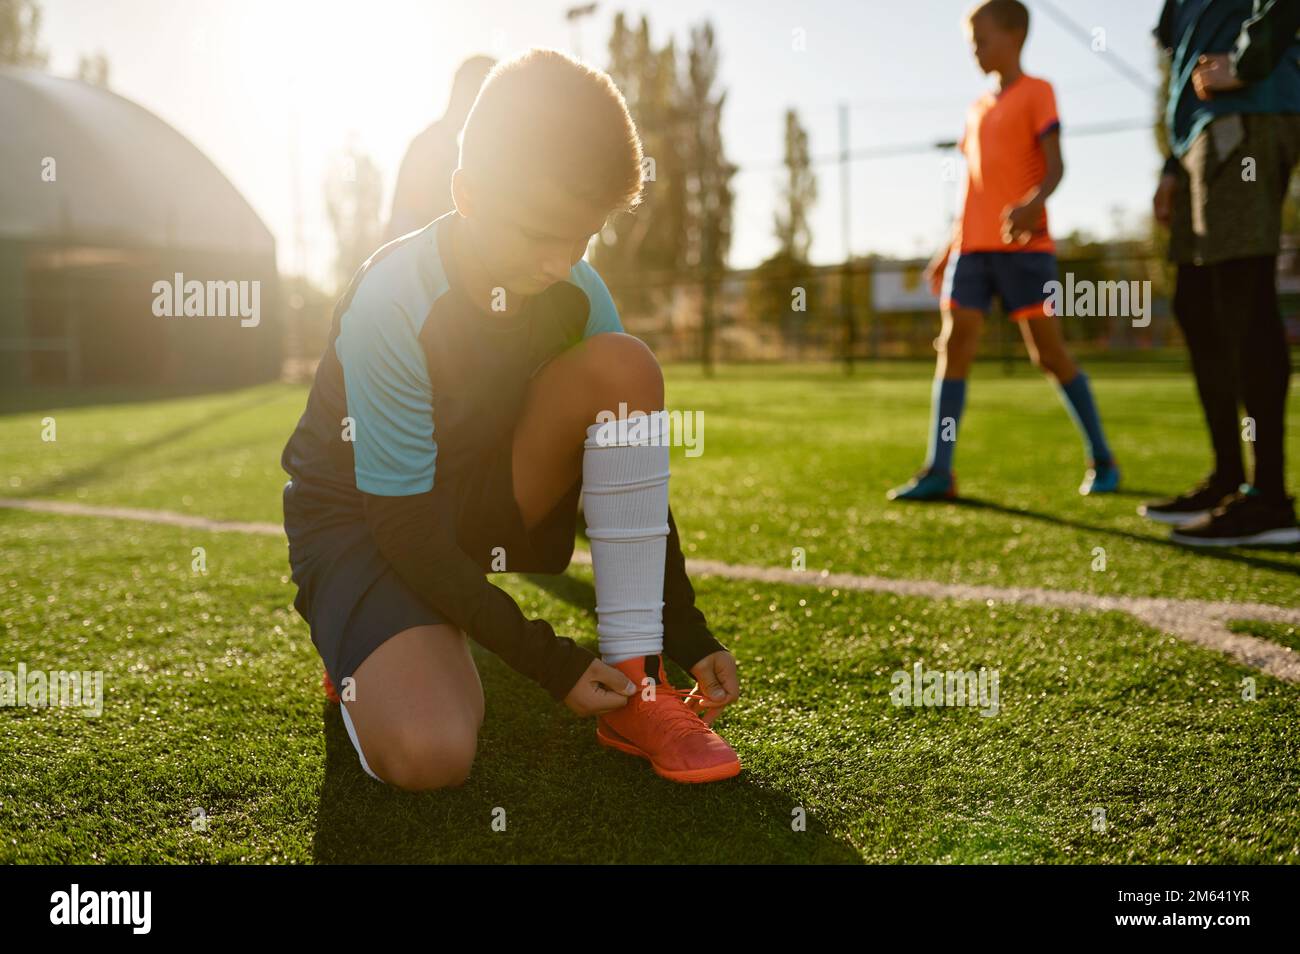 Ein kleiner Footballspieler, der Schnürsenkel bindet und auf dem Fußballfeld sitzt Stockfoto